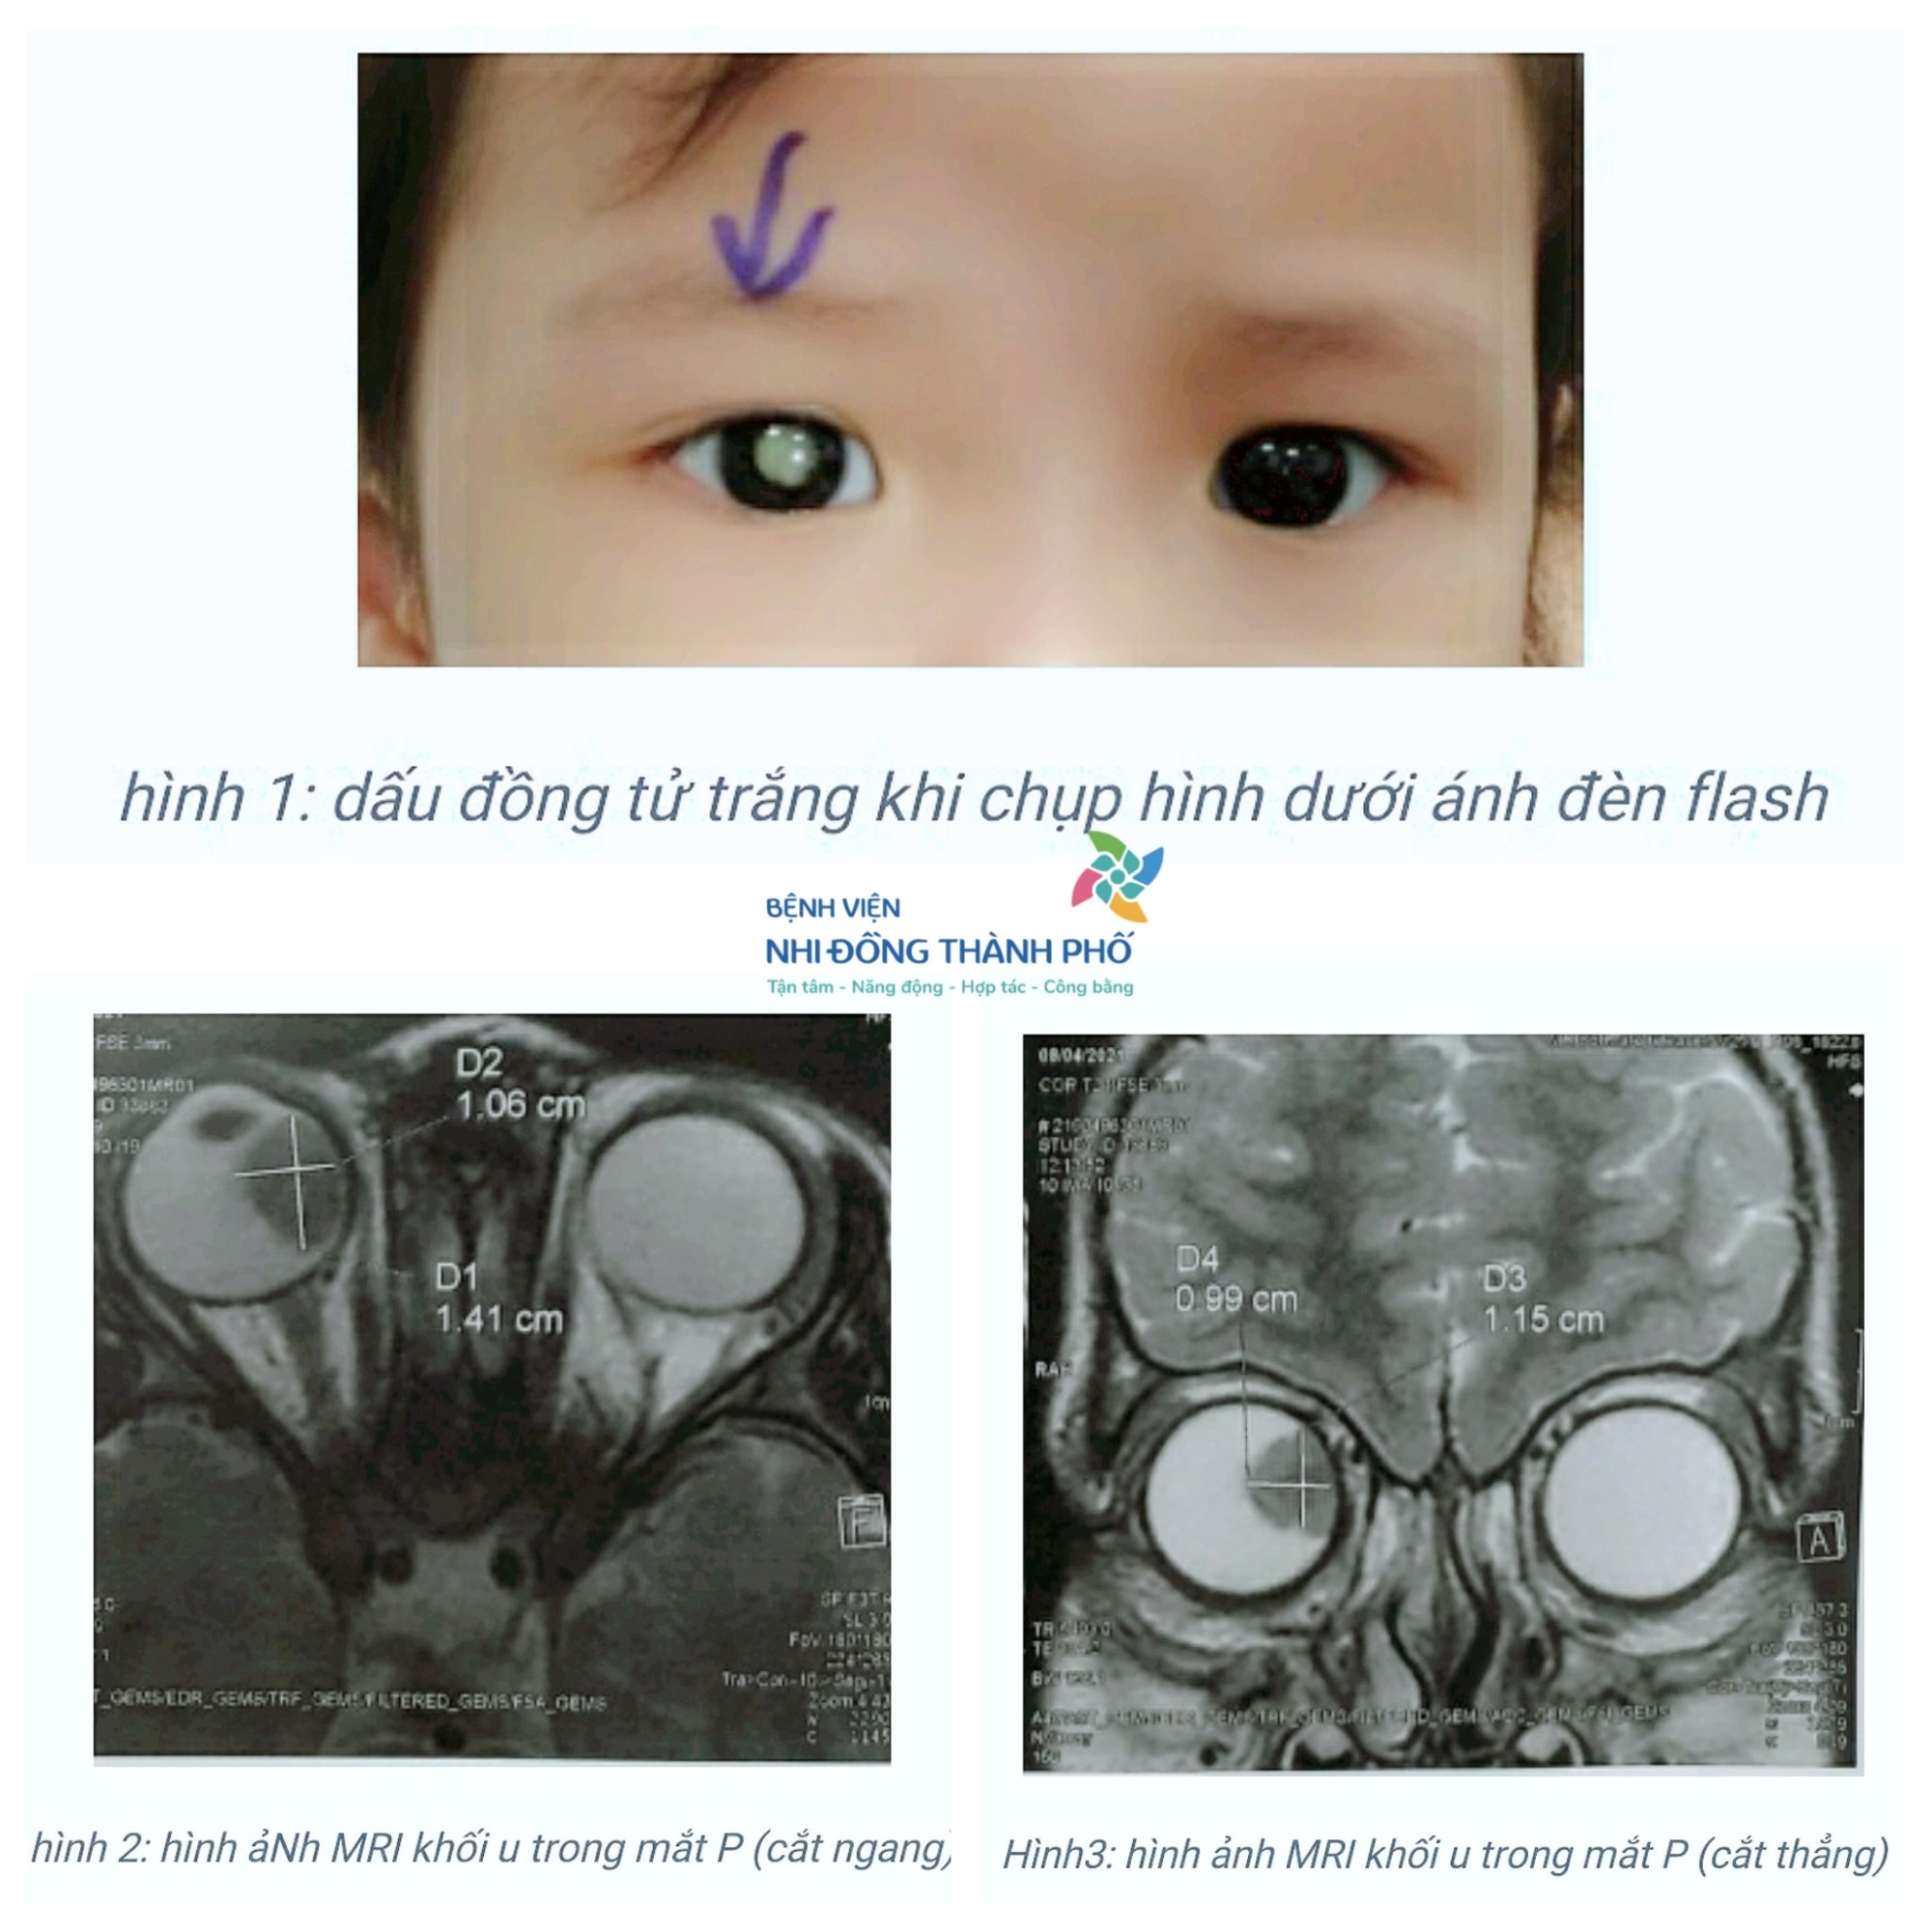 Một bệnh nhi phải cắt bỏ 1 bên mắt dù không có dấu hiệu bất thường về sức khỏe, bác sĩ lưu ý đặc biệt cho phụ huynh khi chăm sóc mắt cho trẻ - Ảnh 1